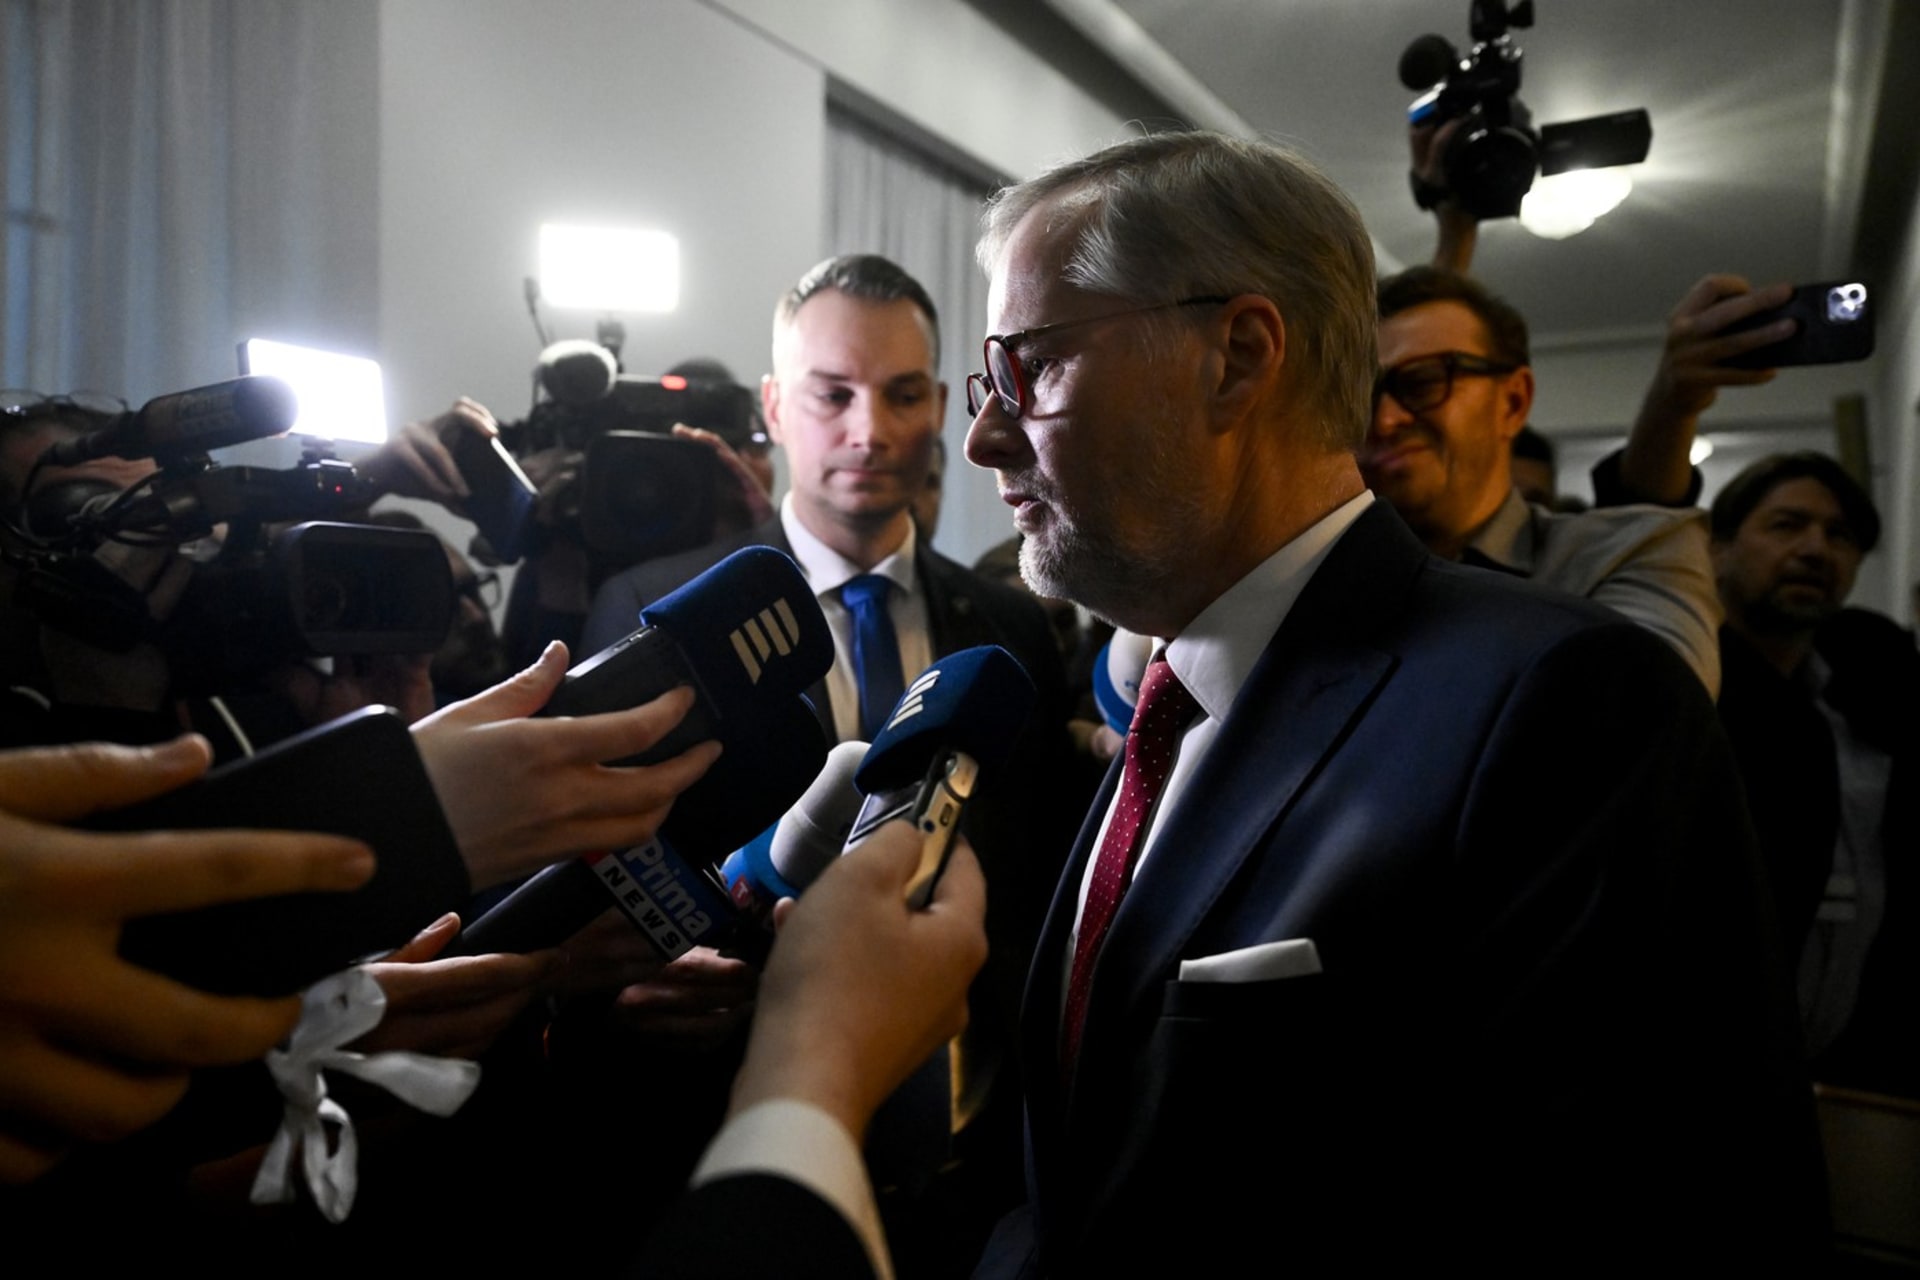 Podle komentátora Martina Schmarcze voliči premiéra Petra Fialu (ODS) trestají.